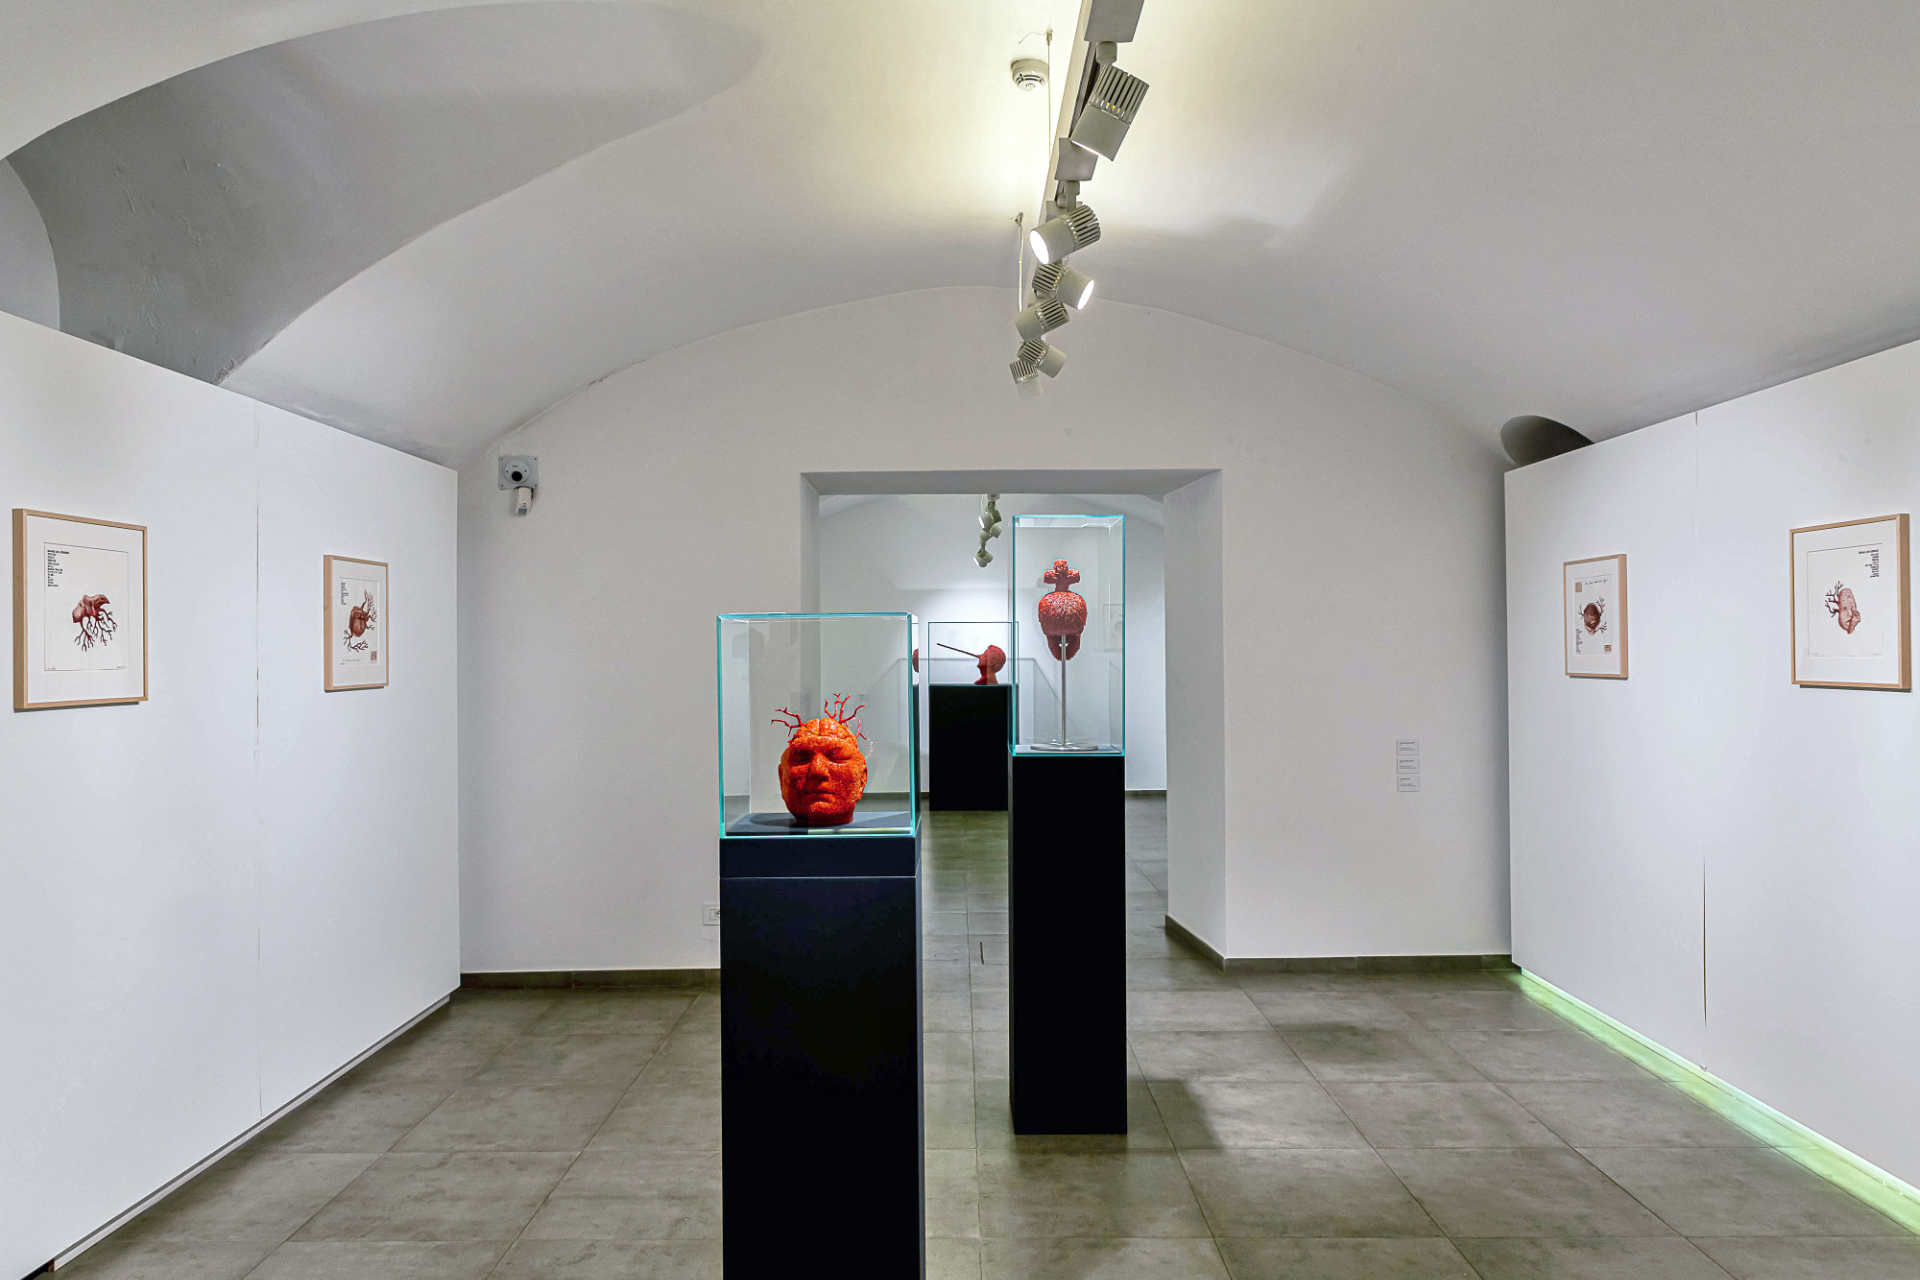 Jan Fabre, Galleria Mucciaccia Roma, installation